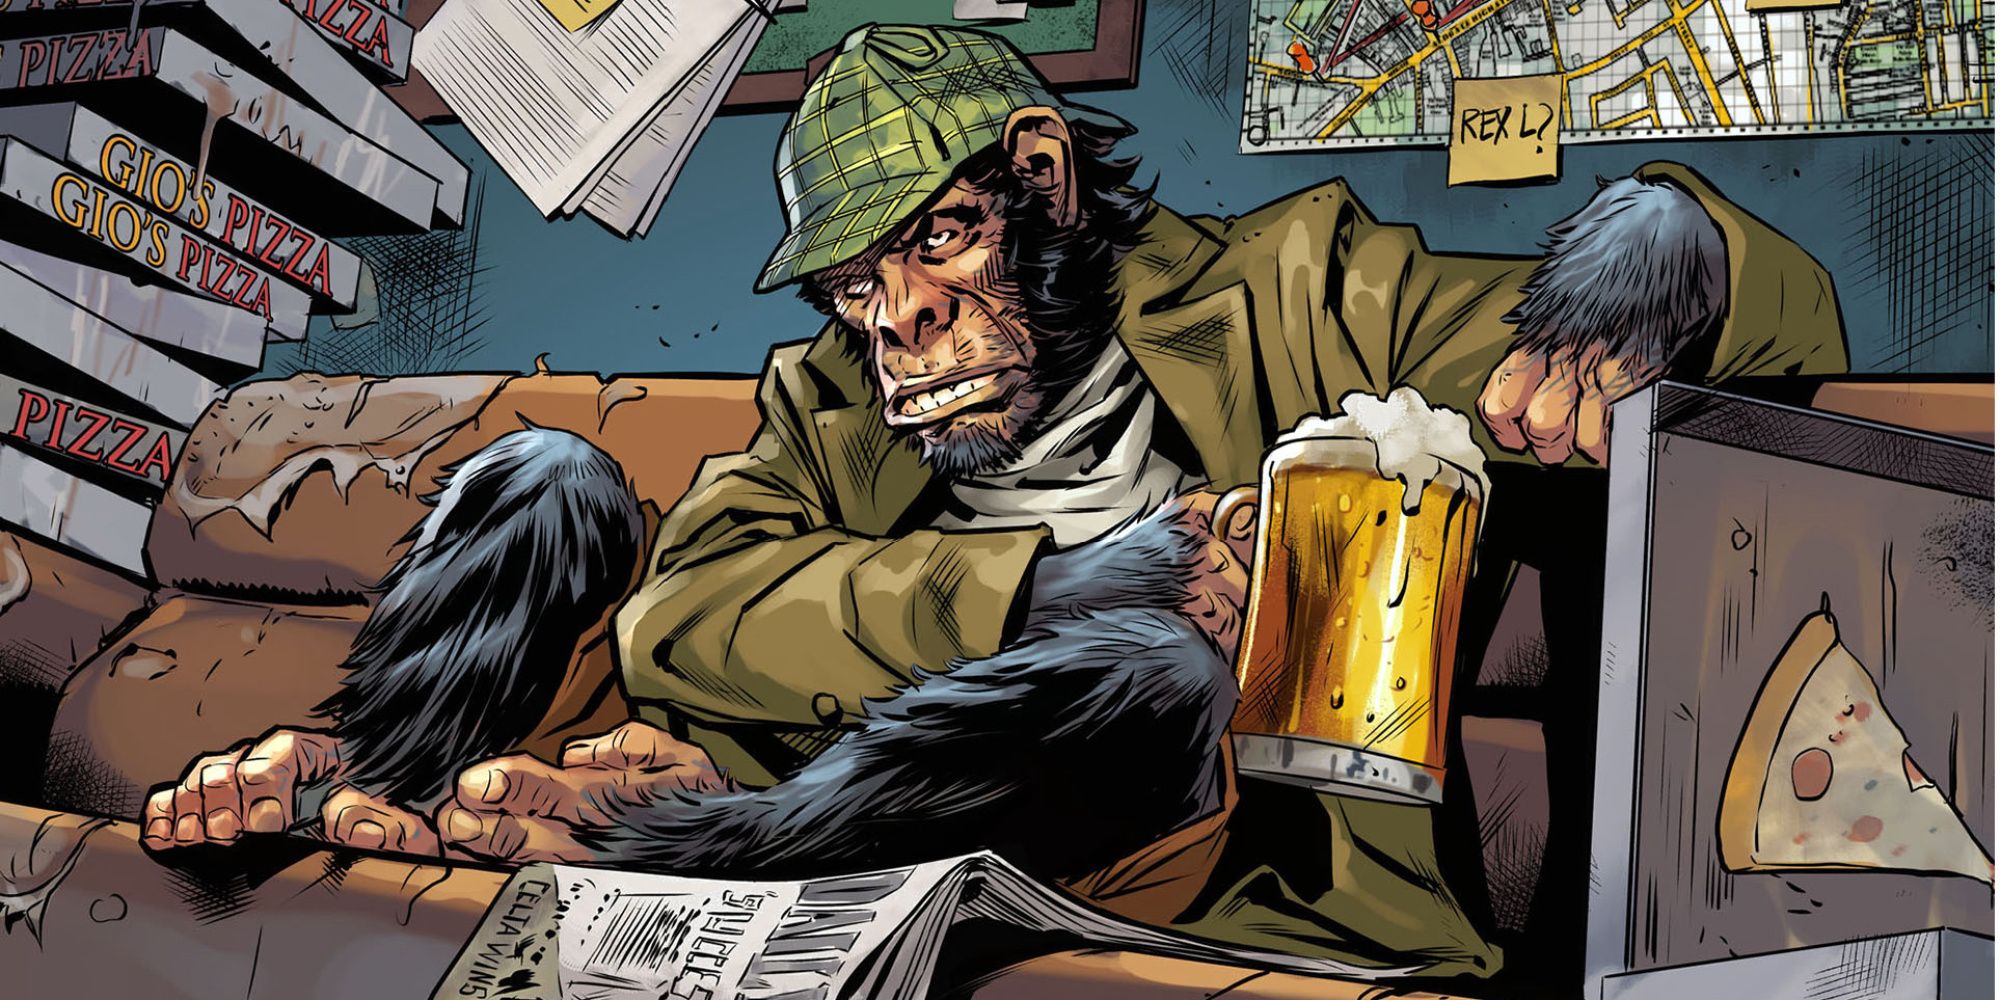 DC Comics character Detective Chimp